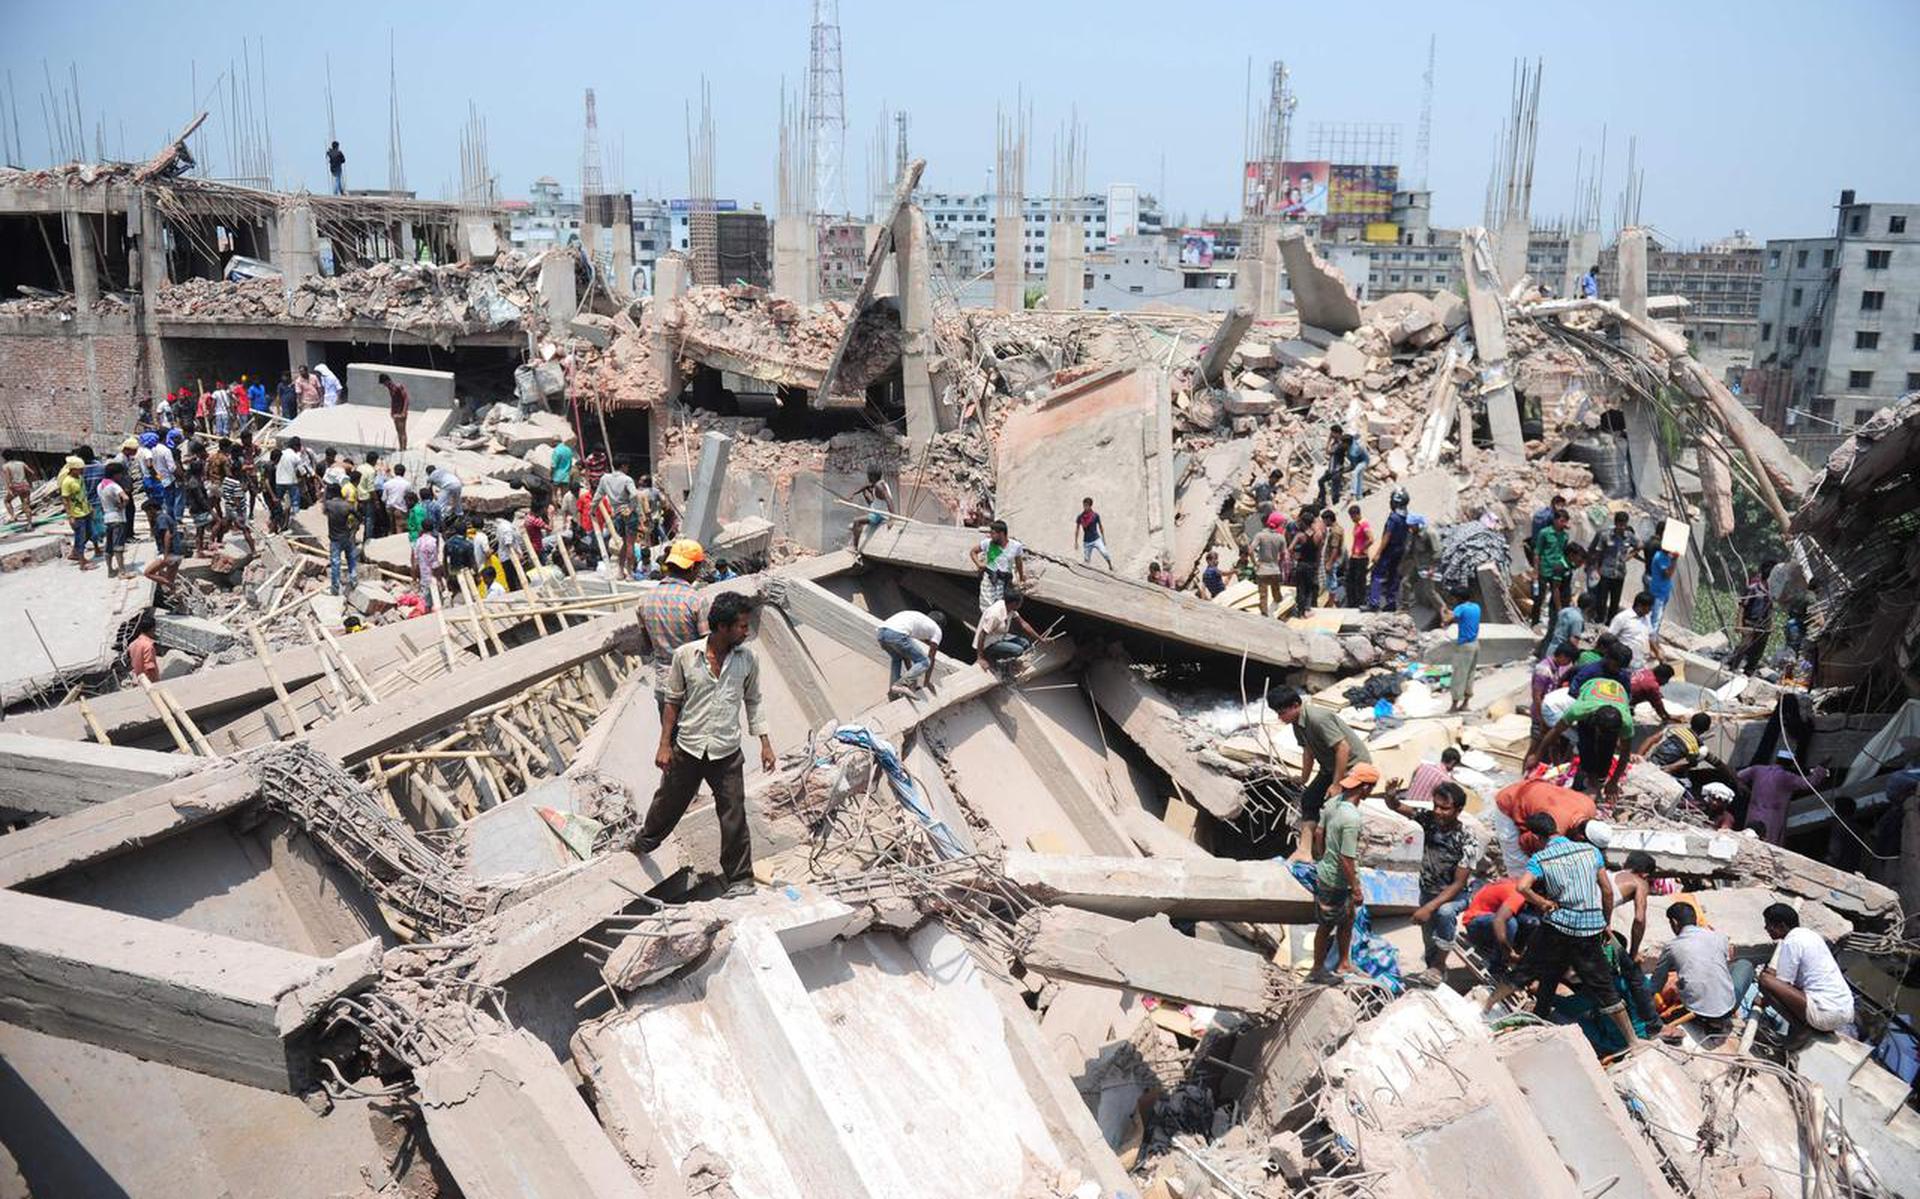 Het instorten van het fabriekscomplex Rana Plaza in Bangladesh kostte tien jaar geleden 1134 mensen het leven.